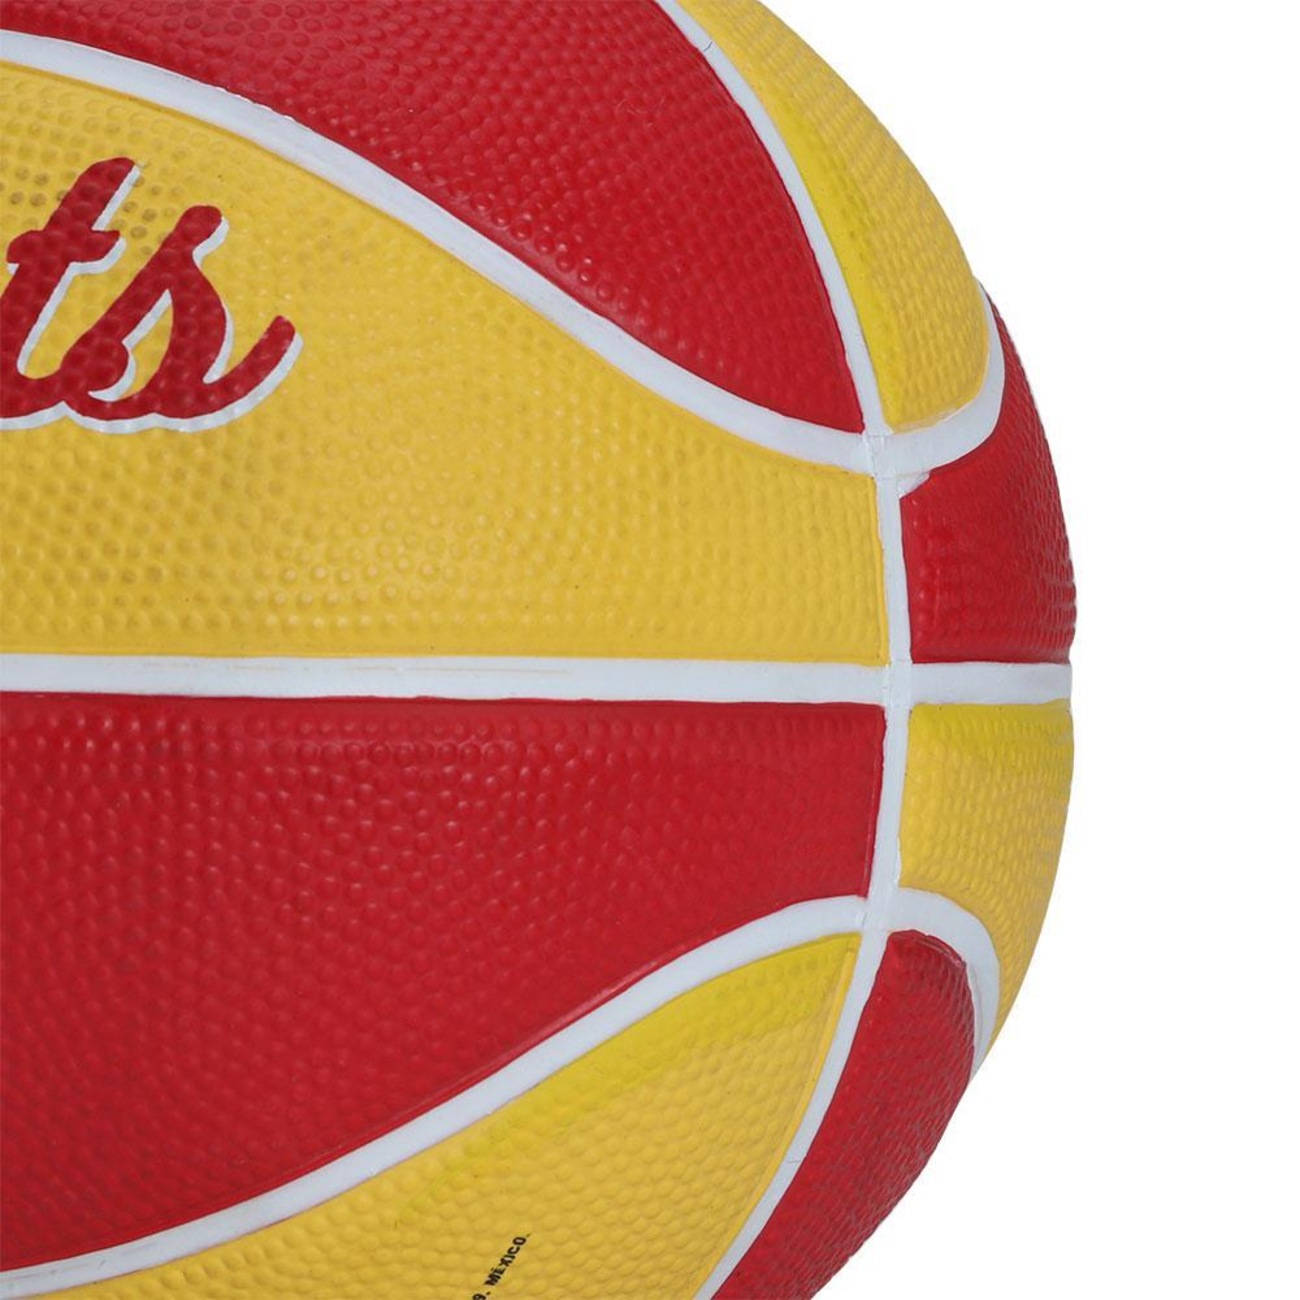 Bola de Basquete Wilson nba Team Retro Mini Hou Rockets #3 em Promoção na  Americanas